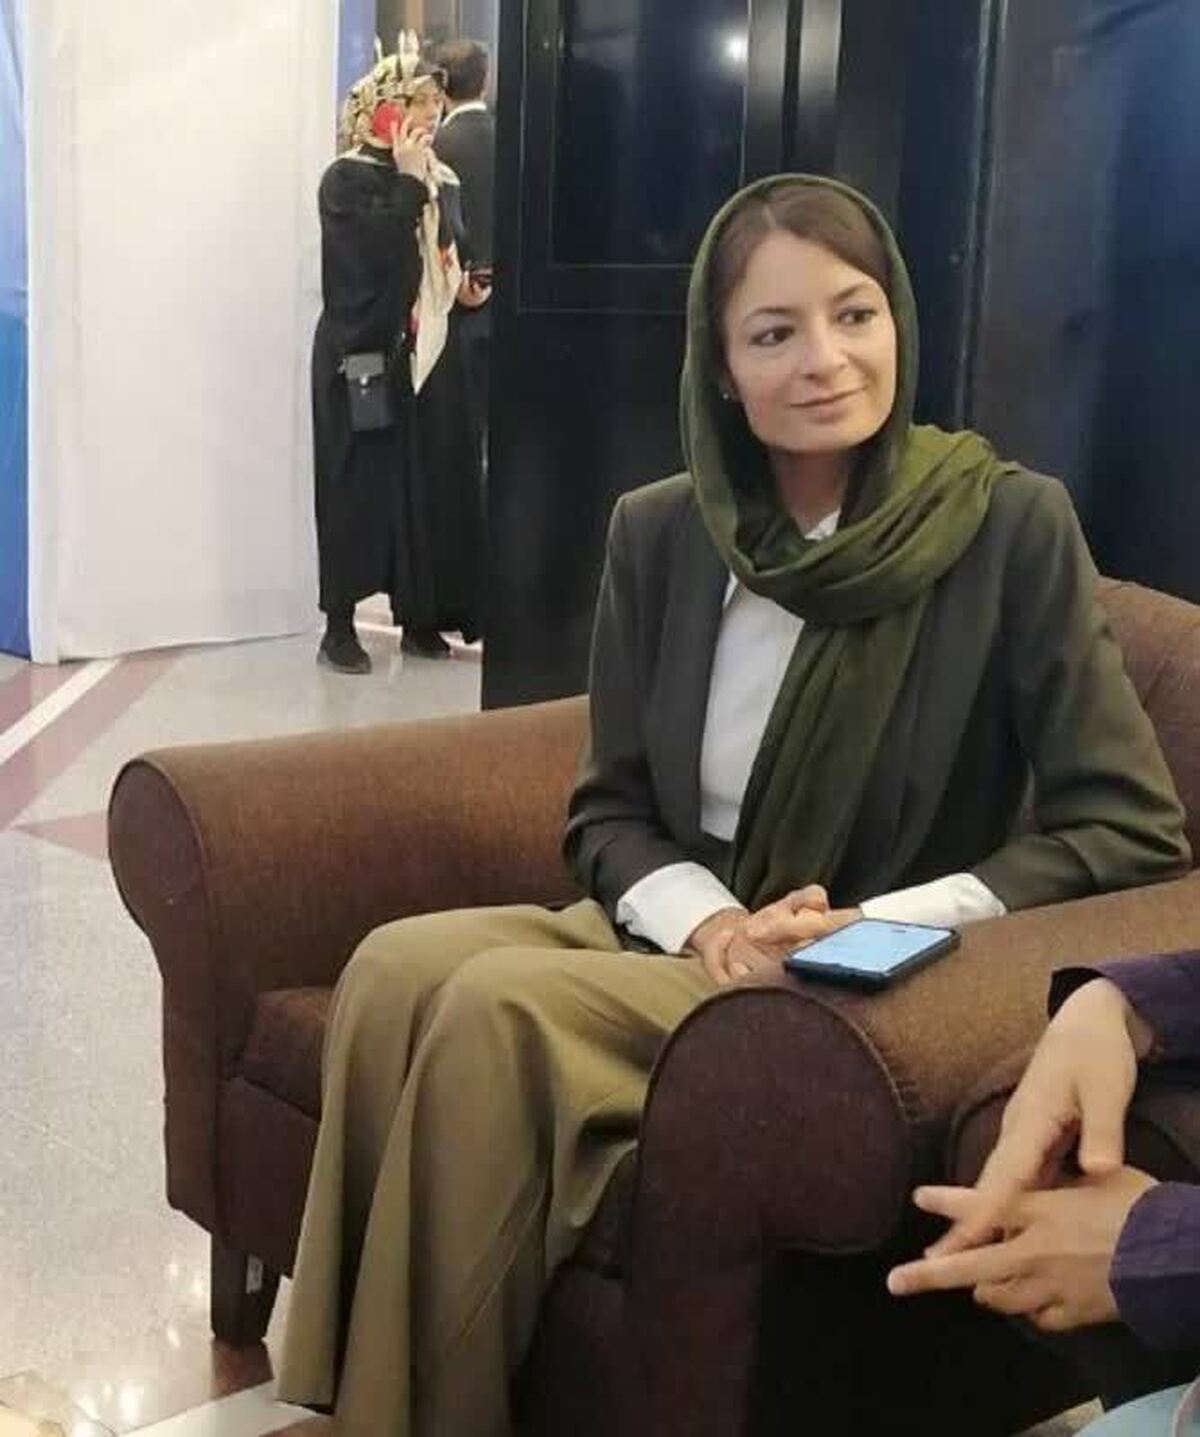 نویسنده وکارگردان ایتالیایی: زنان ایرانی را بسیار قدرتمند دیدم